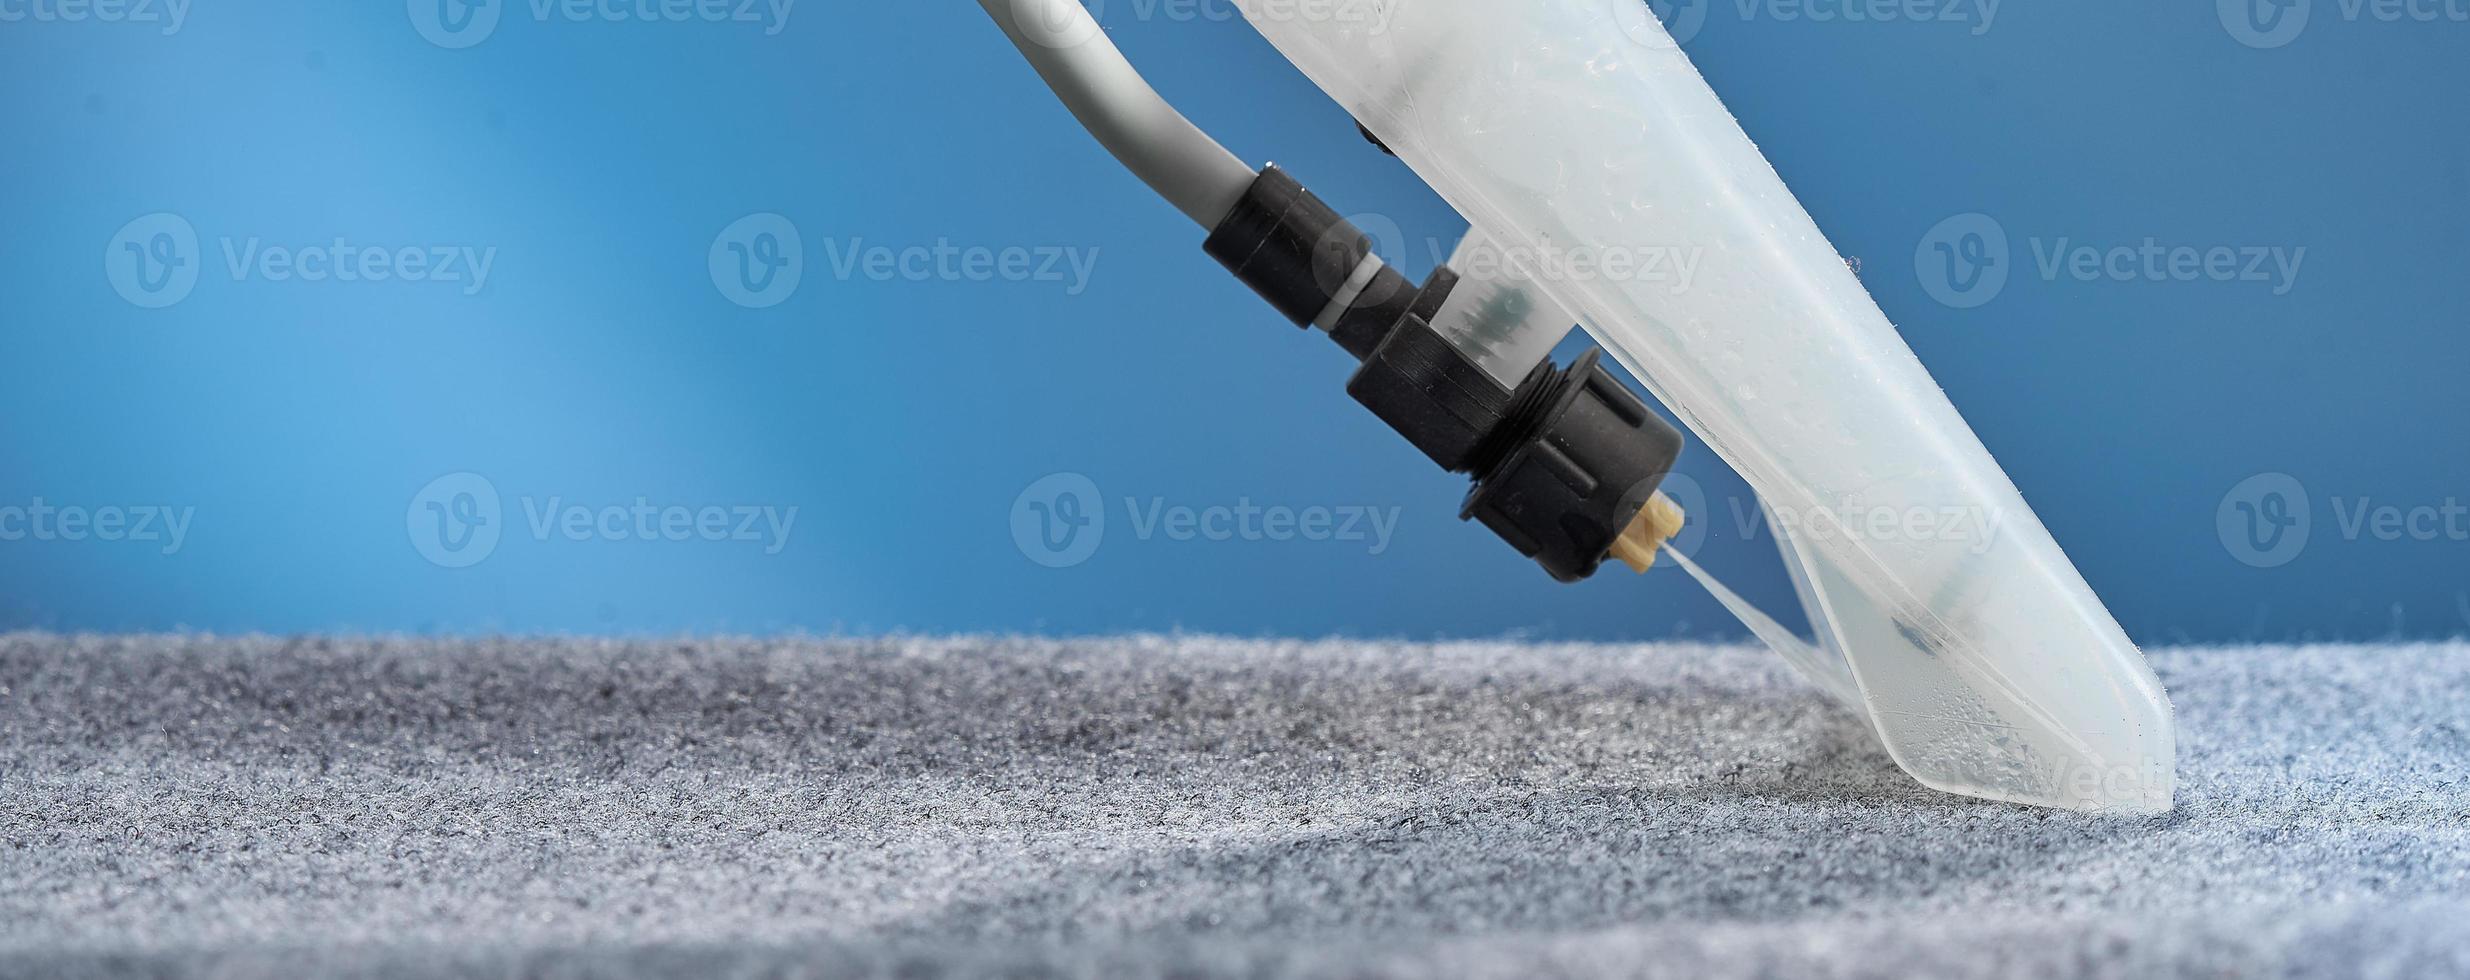 tvätta mattan med dammsugare närbild på en blå bakgrund. foto